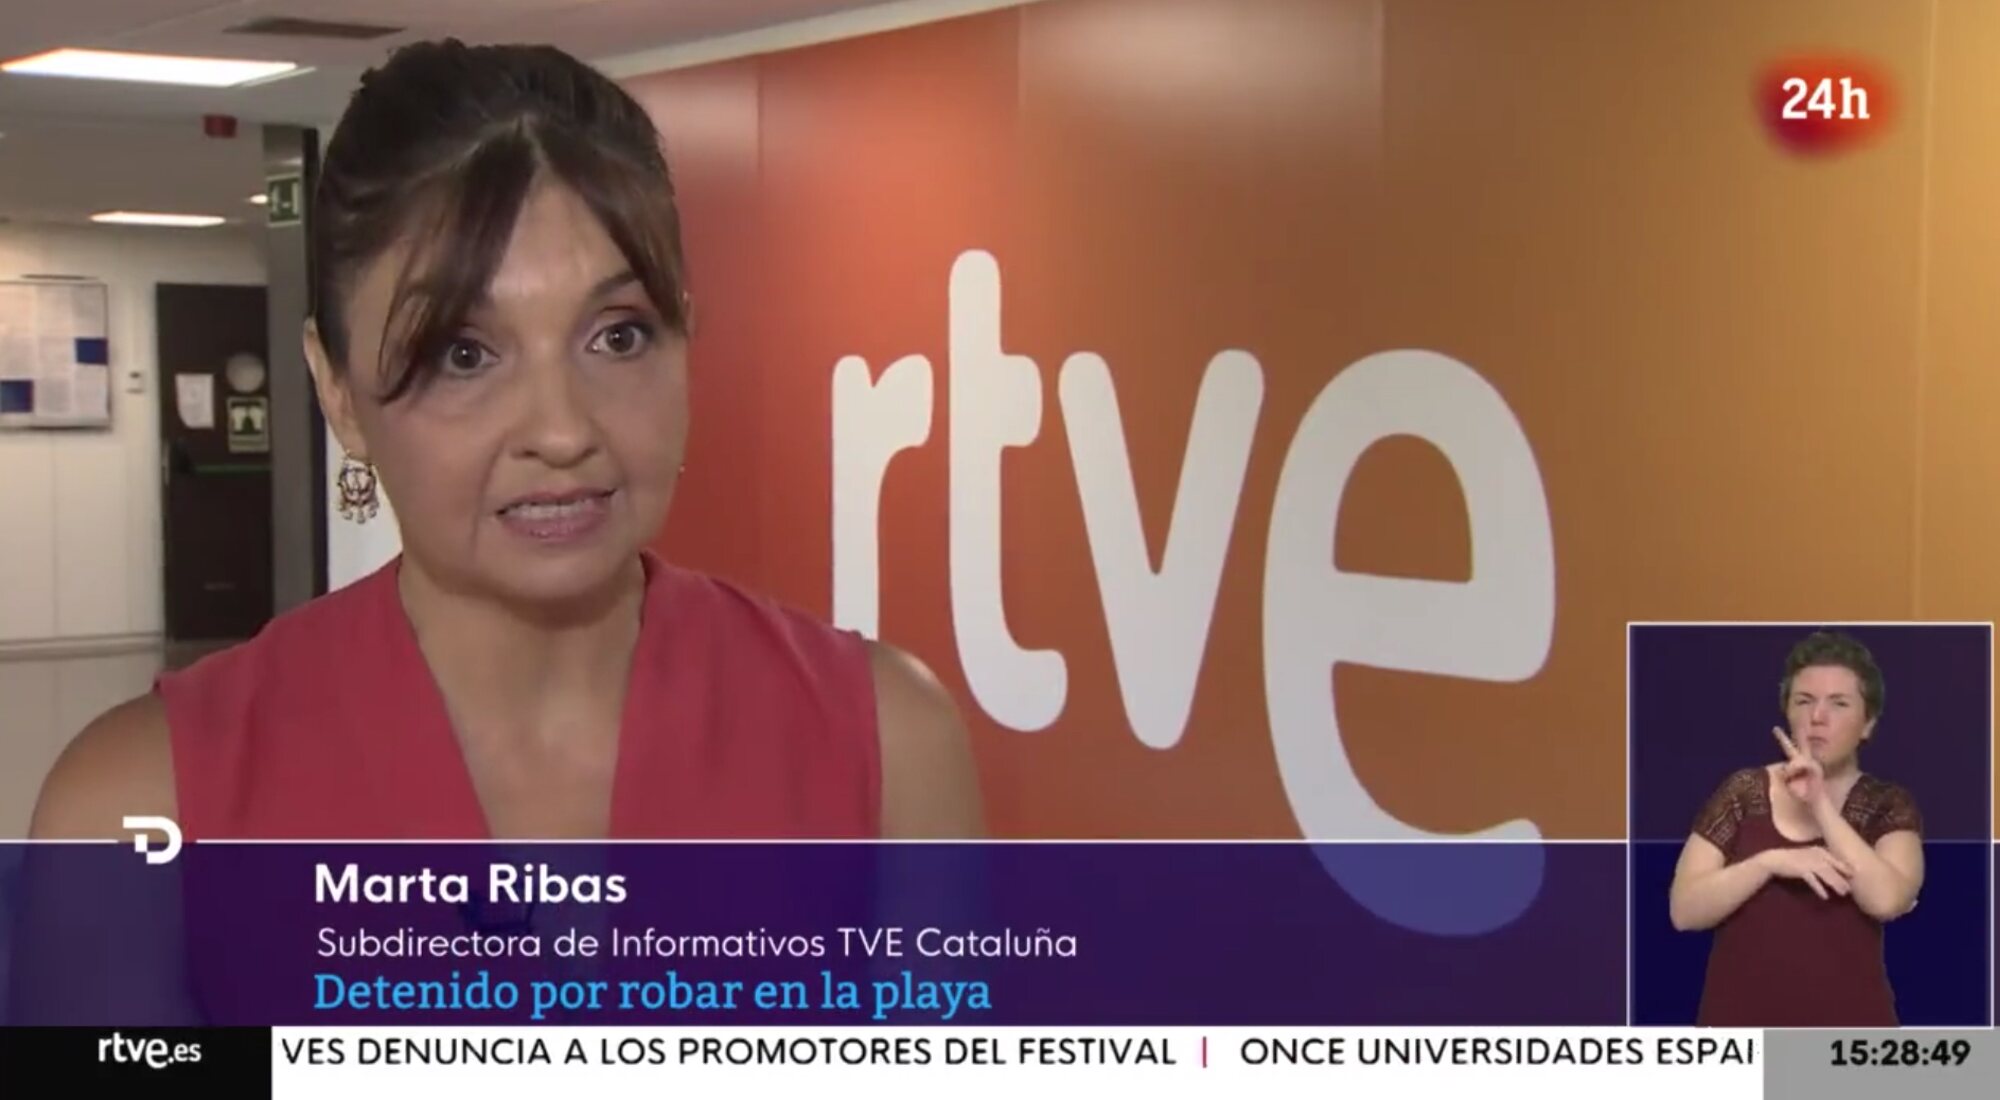 Marta Ribas, subdirectora de Informativos de TVE Cataluña